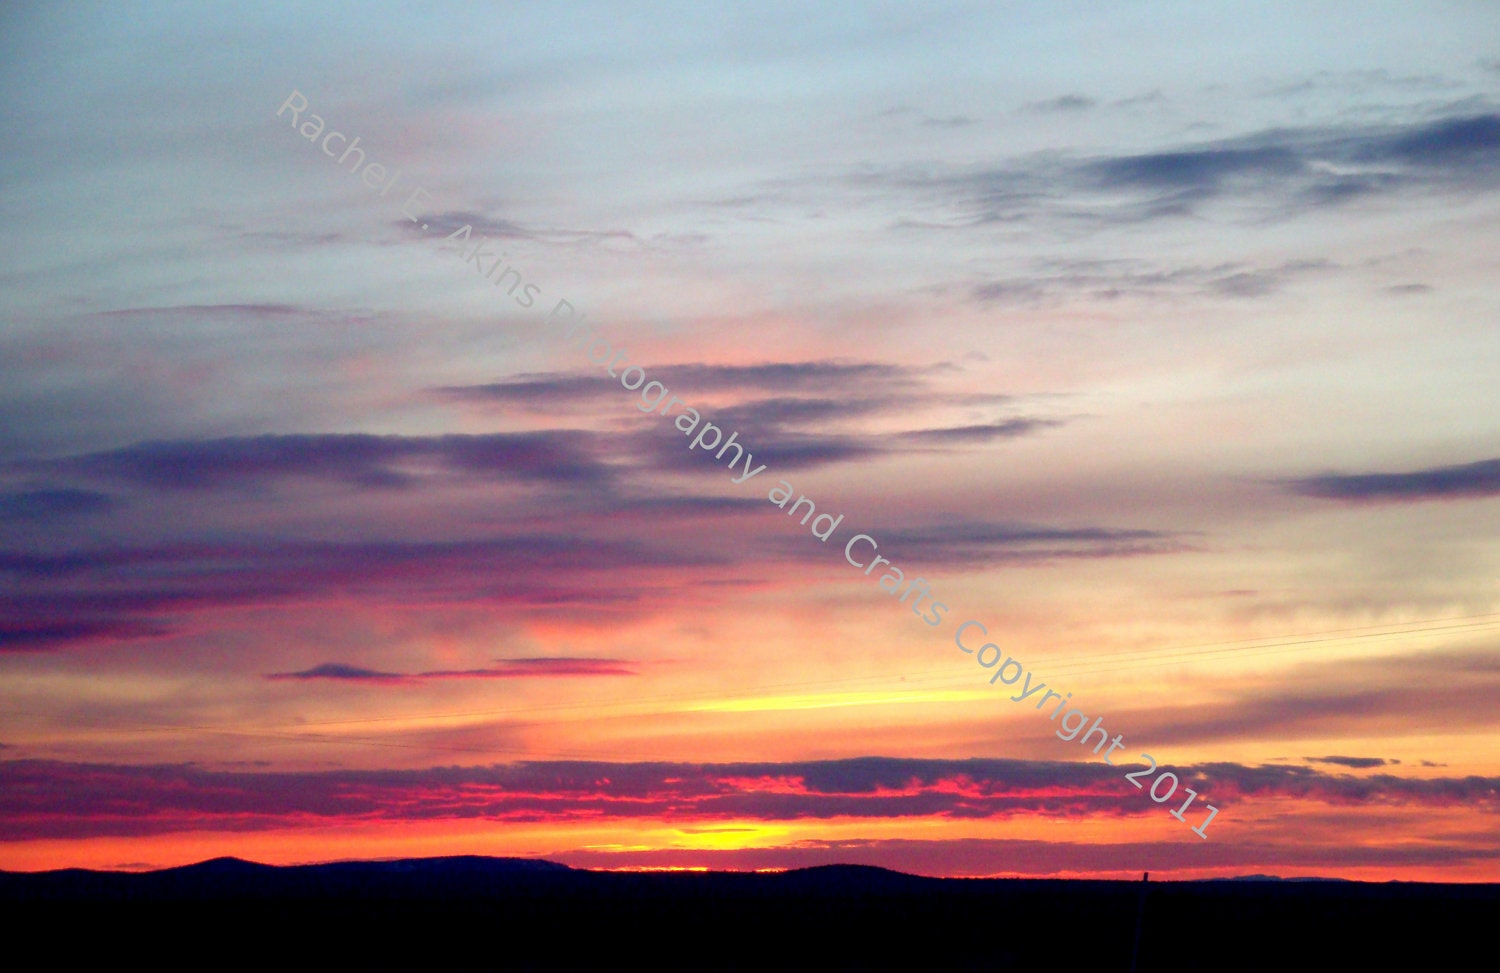 A High Desert Sunset - An Original 8"X10" photographic print - Photo by Rachel - RACHPhotography